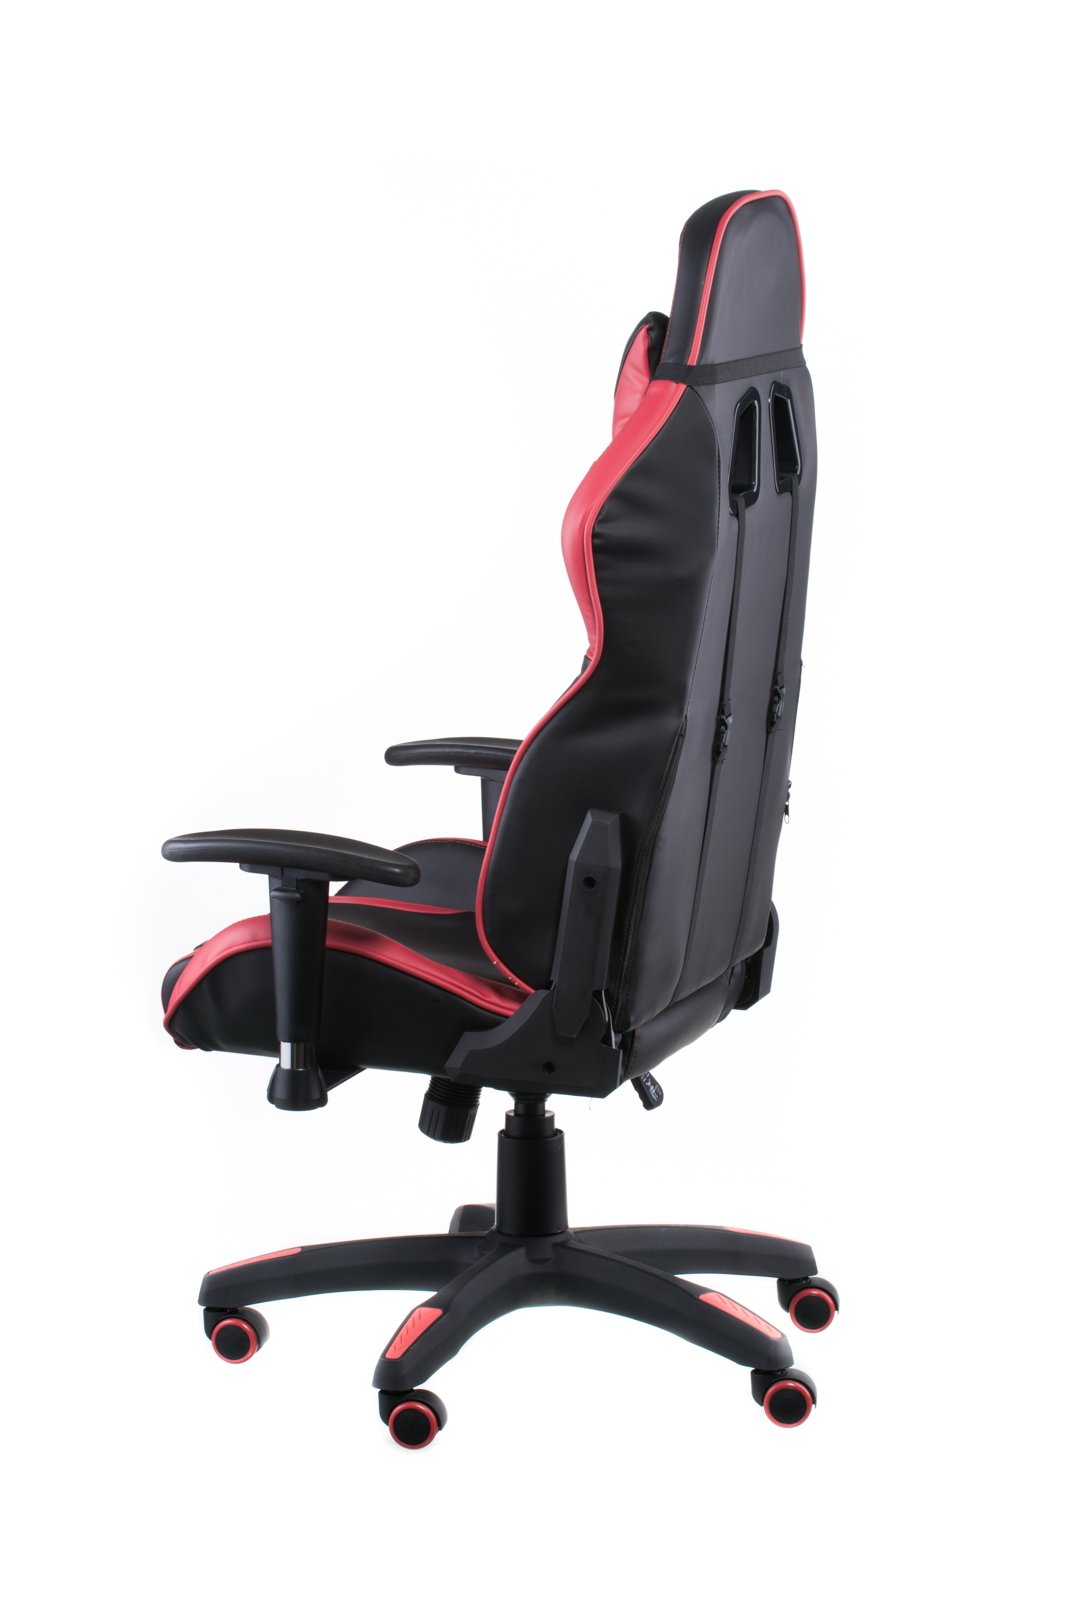 Геймерское кресло Special4you ExtremeRace черное с красным (E4930) - фото 6